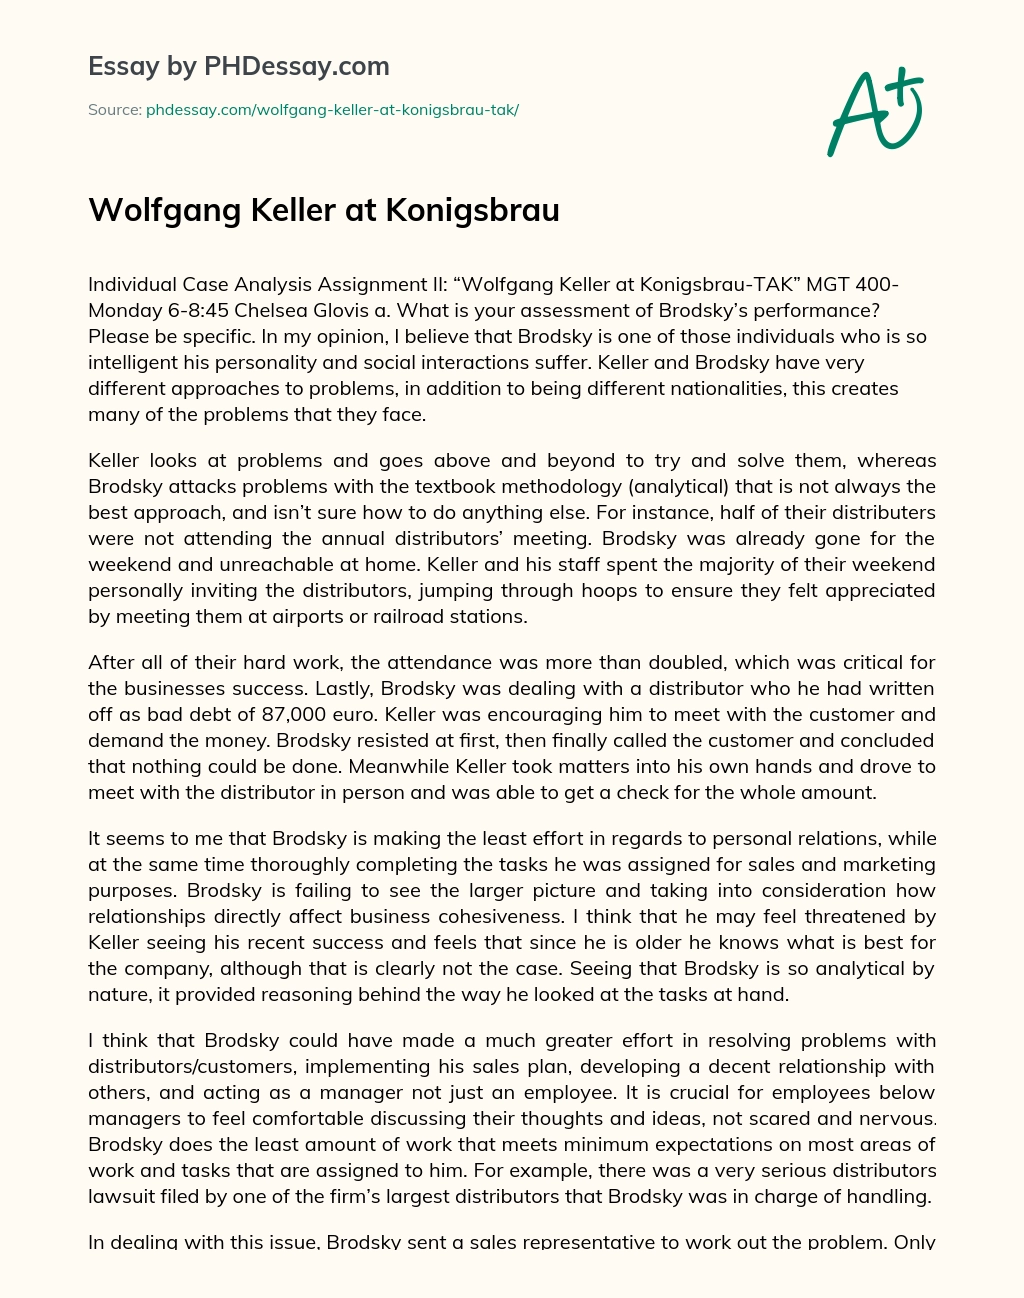 Wolfgang Keller at Konigsbrau essay